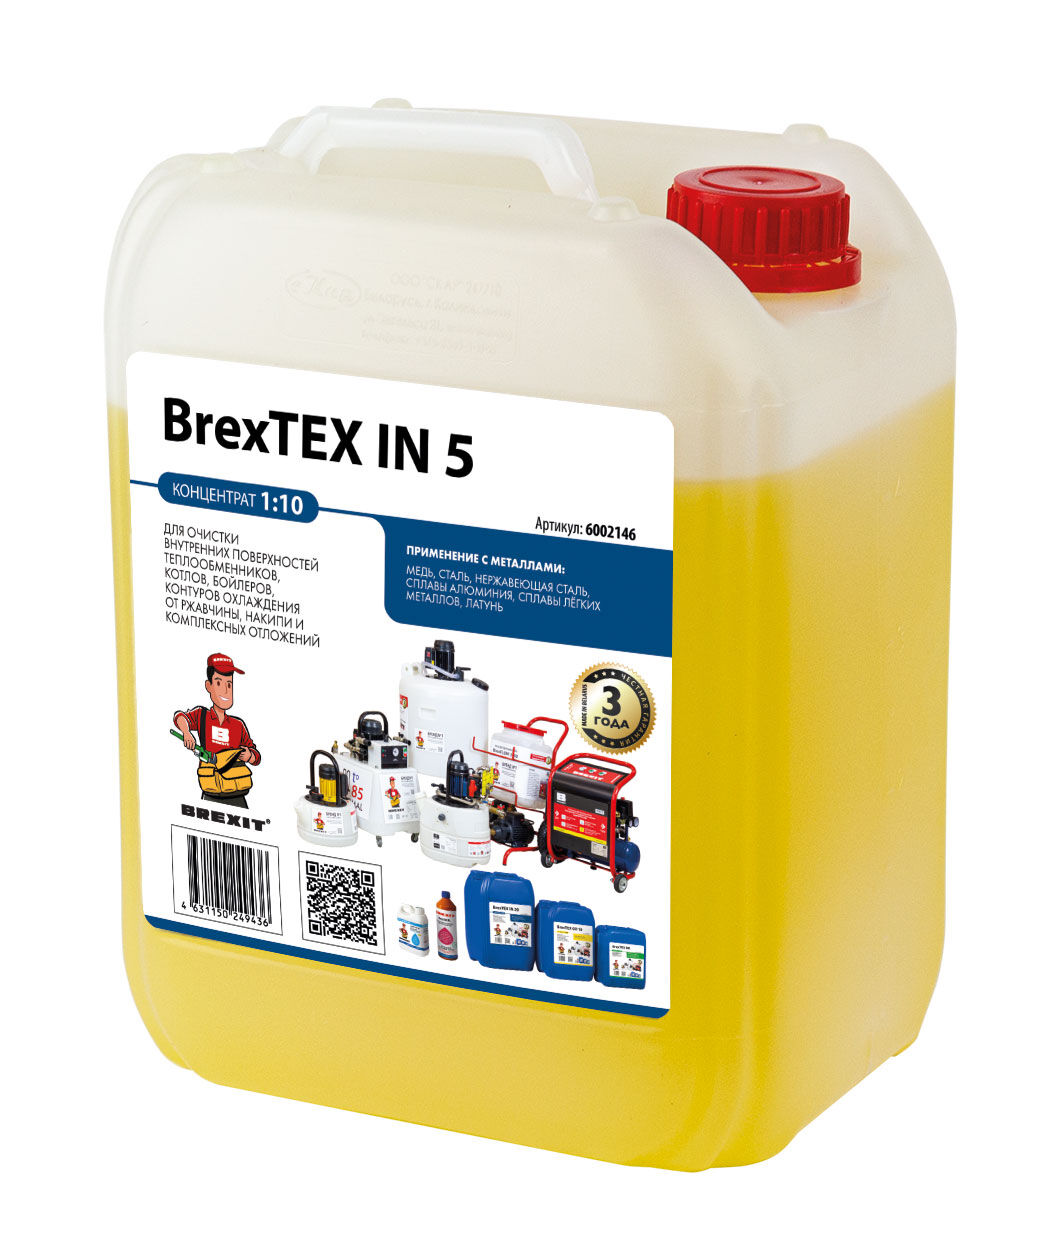 Реагент для очистки теплообменного и отопительного оборудования BrexTEX IN 5 brexit